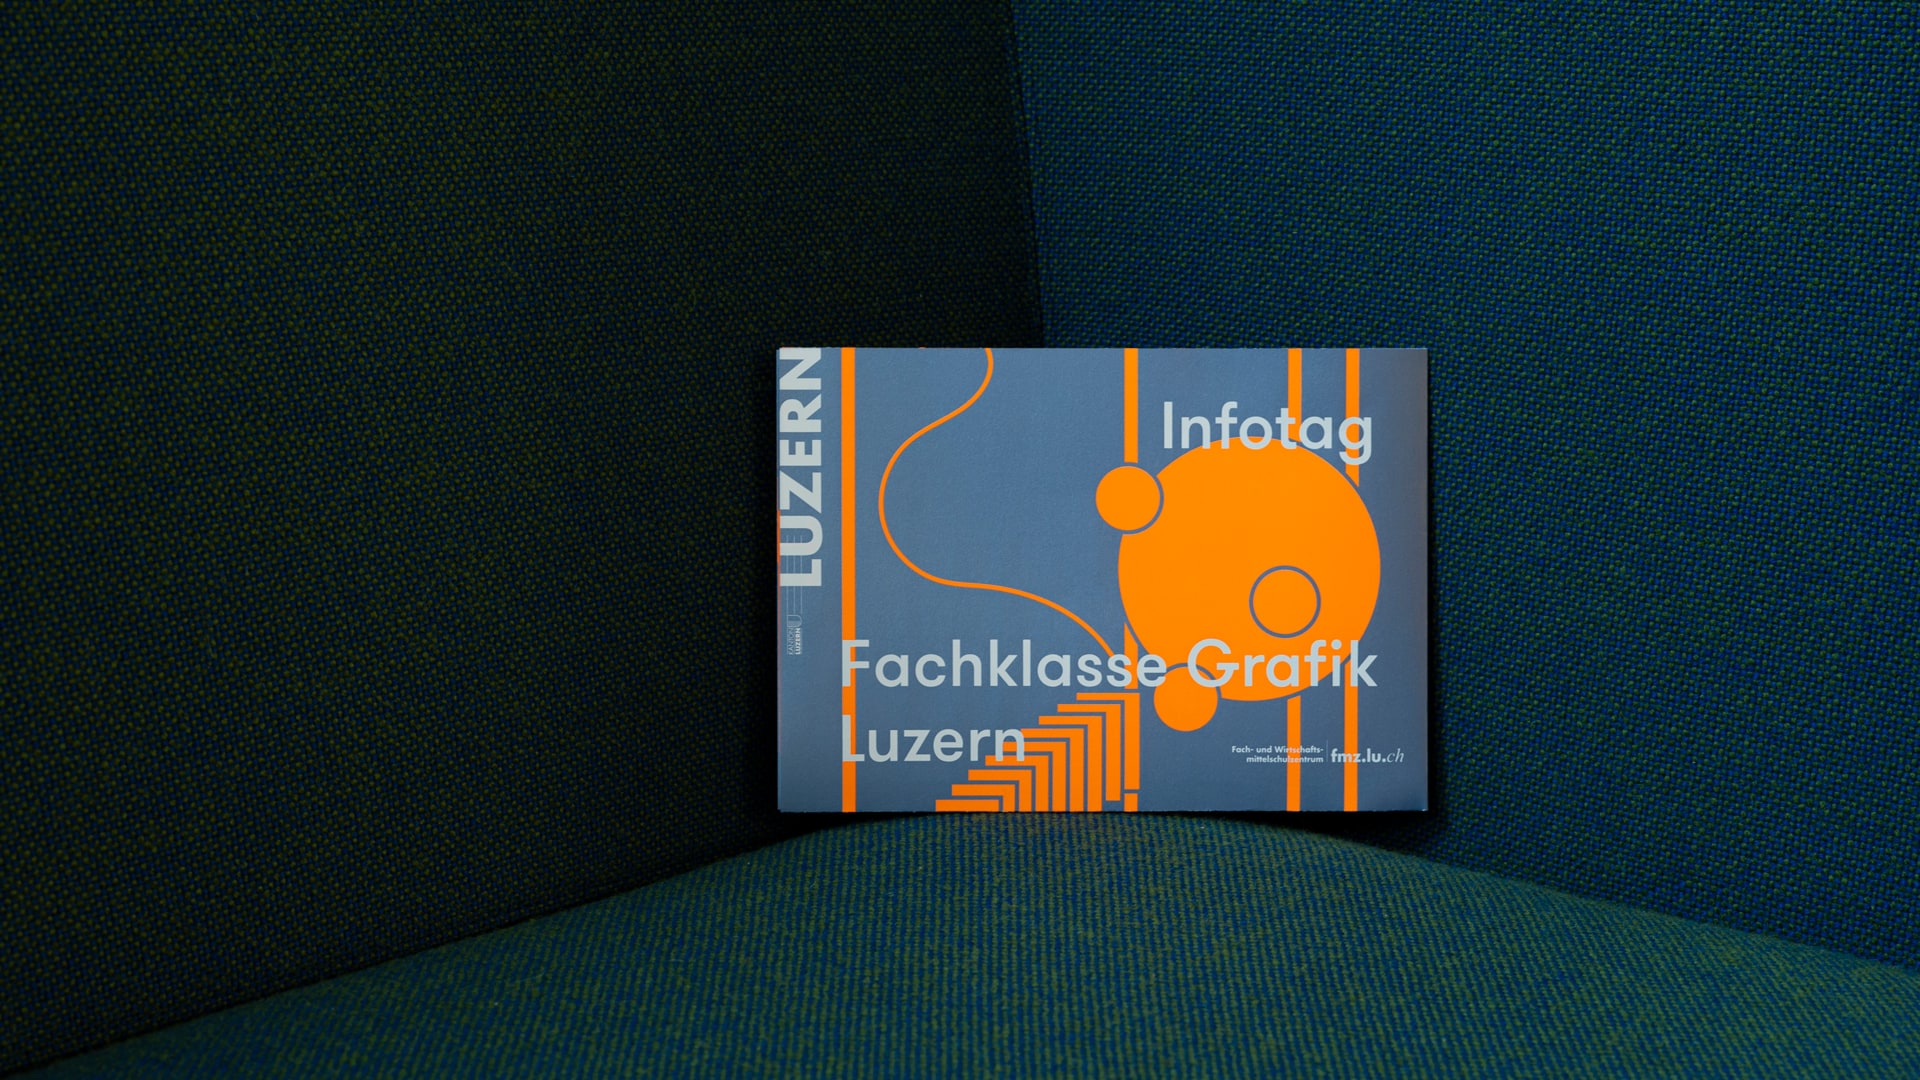 l’équipe [visuelle] – Grafik Agentur Emmenbrücke Luzern – Werbemittel für den Infotag der Fachklasse Grafik Luzern — Faltflyer, Plakat, Animation, Socialmedia